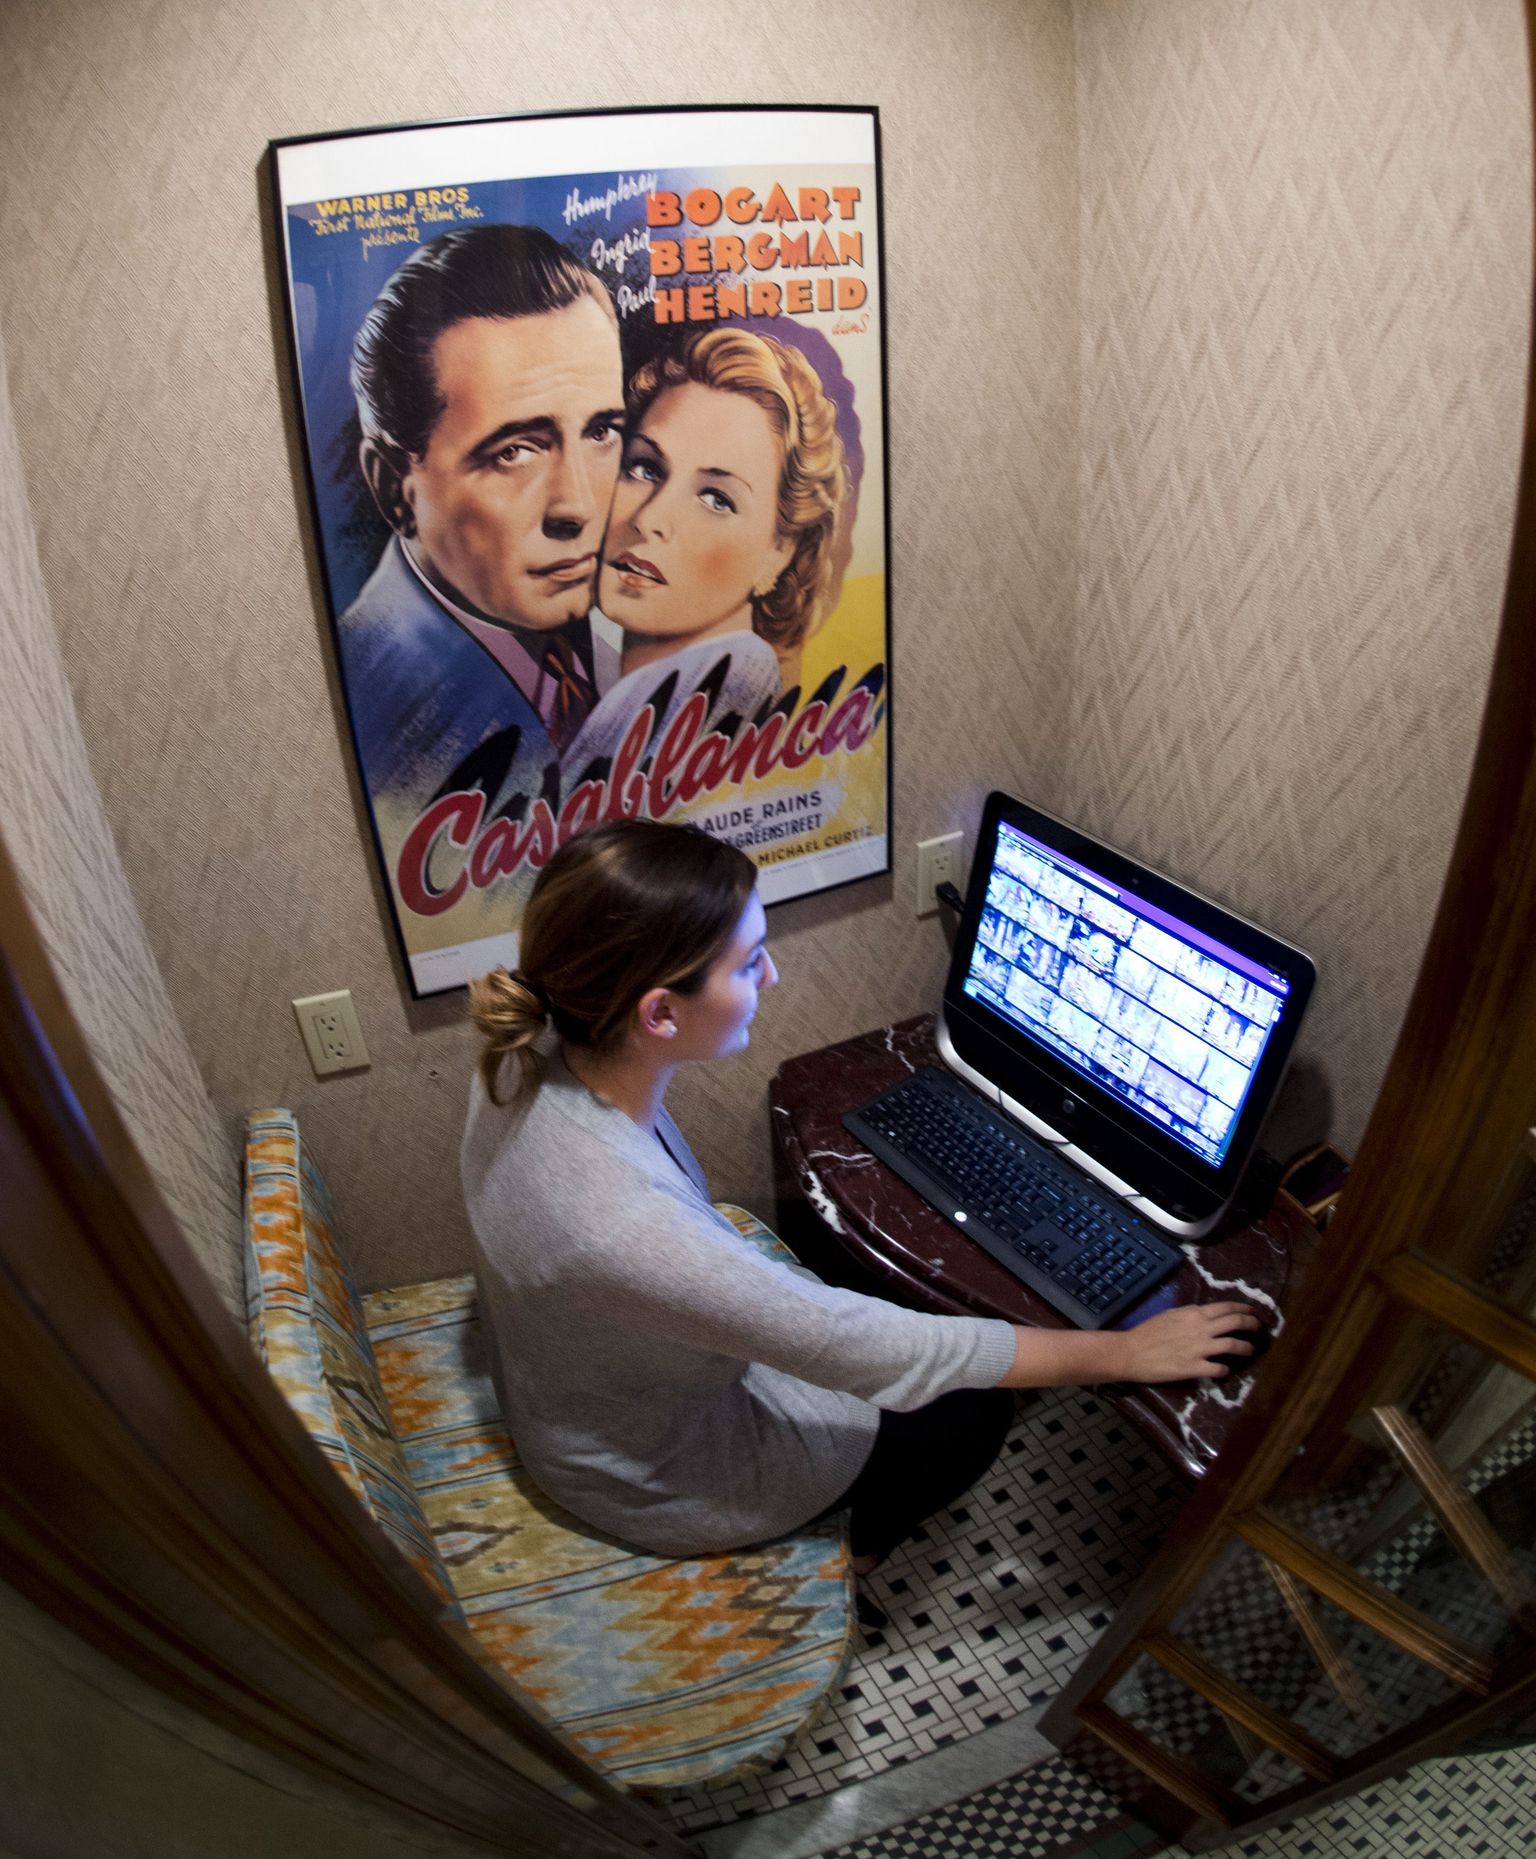 Casablanca hotell on New Yorgis üks populaarsemaid, saades igal kuul TripAdvisoris üle 100 000 vaatamise.